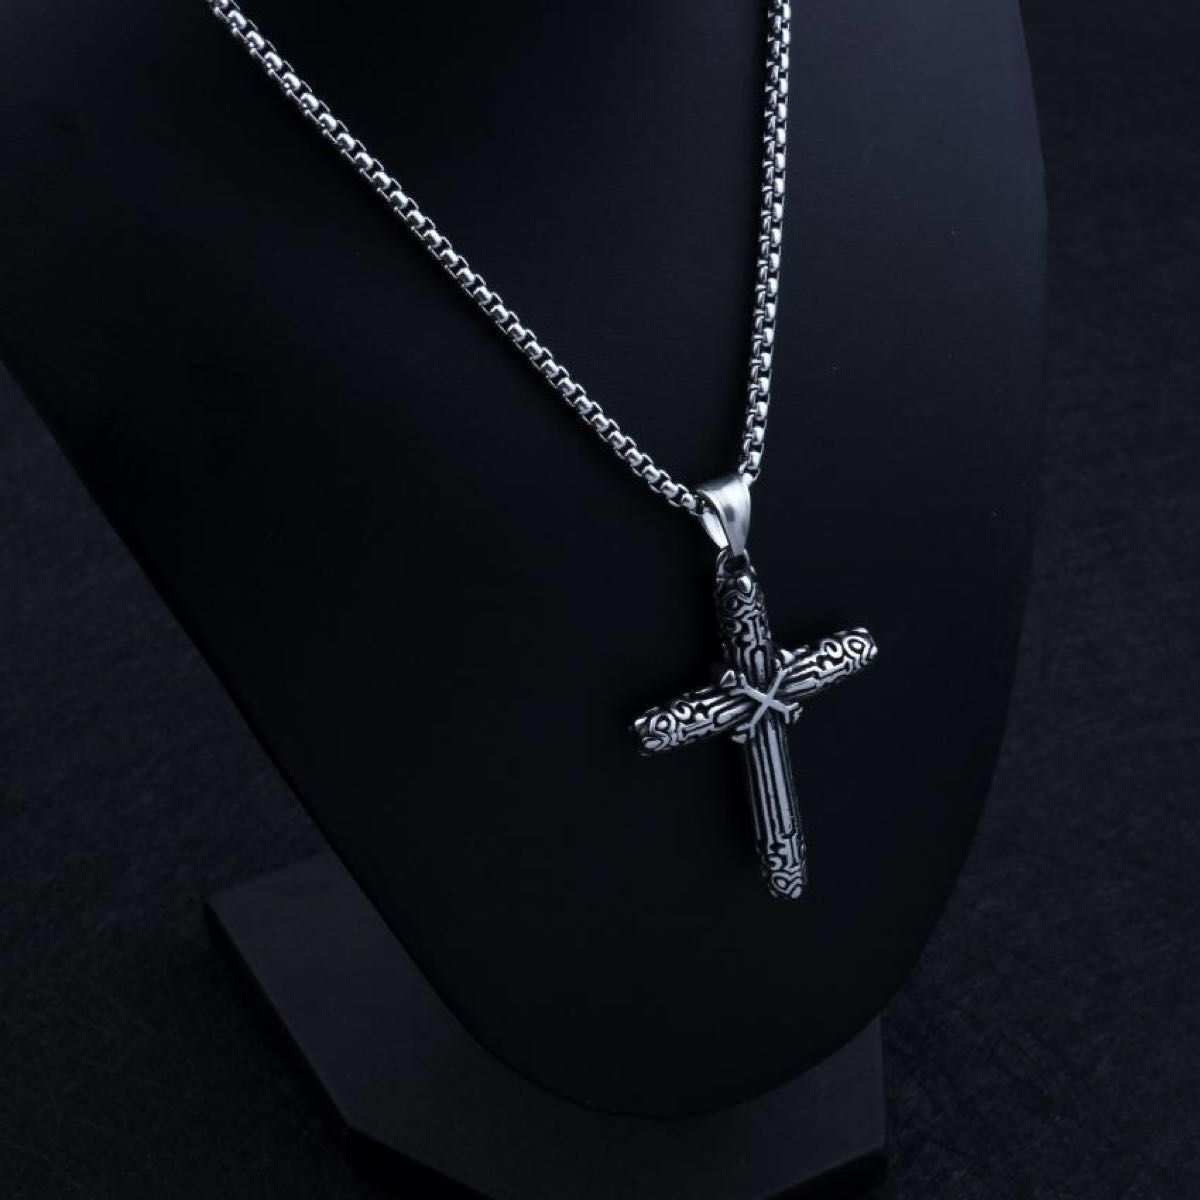 ネックレス 十字架 クロス X マーク メンズ レディース 十字 彫刻 模様 シルバー かっこいい デザイン 装飾 ユニセックス